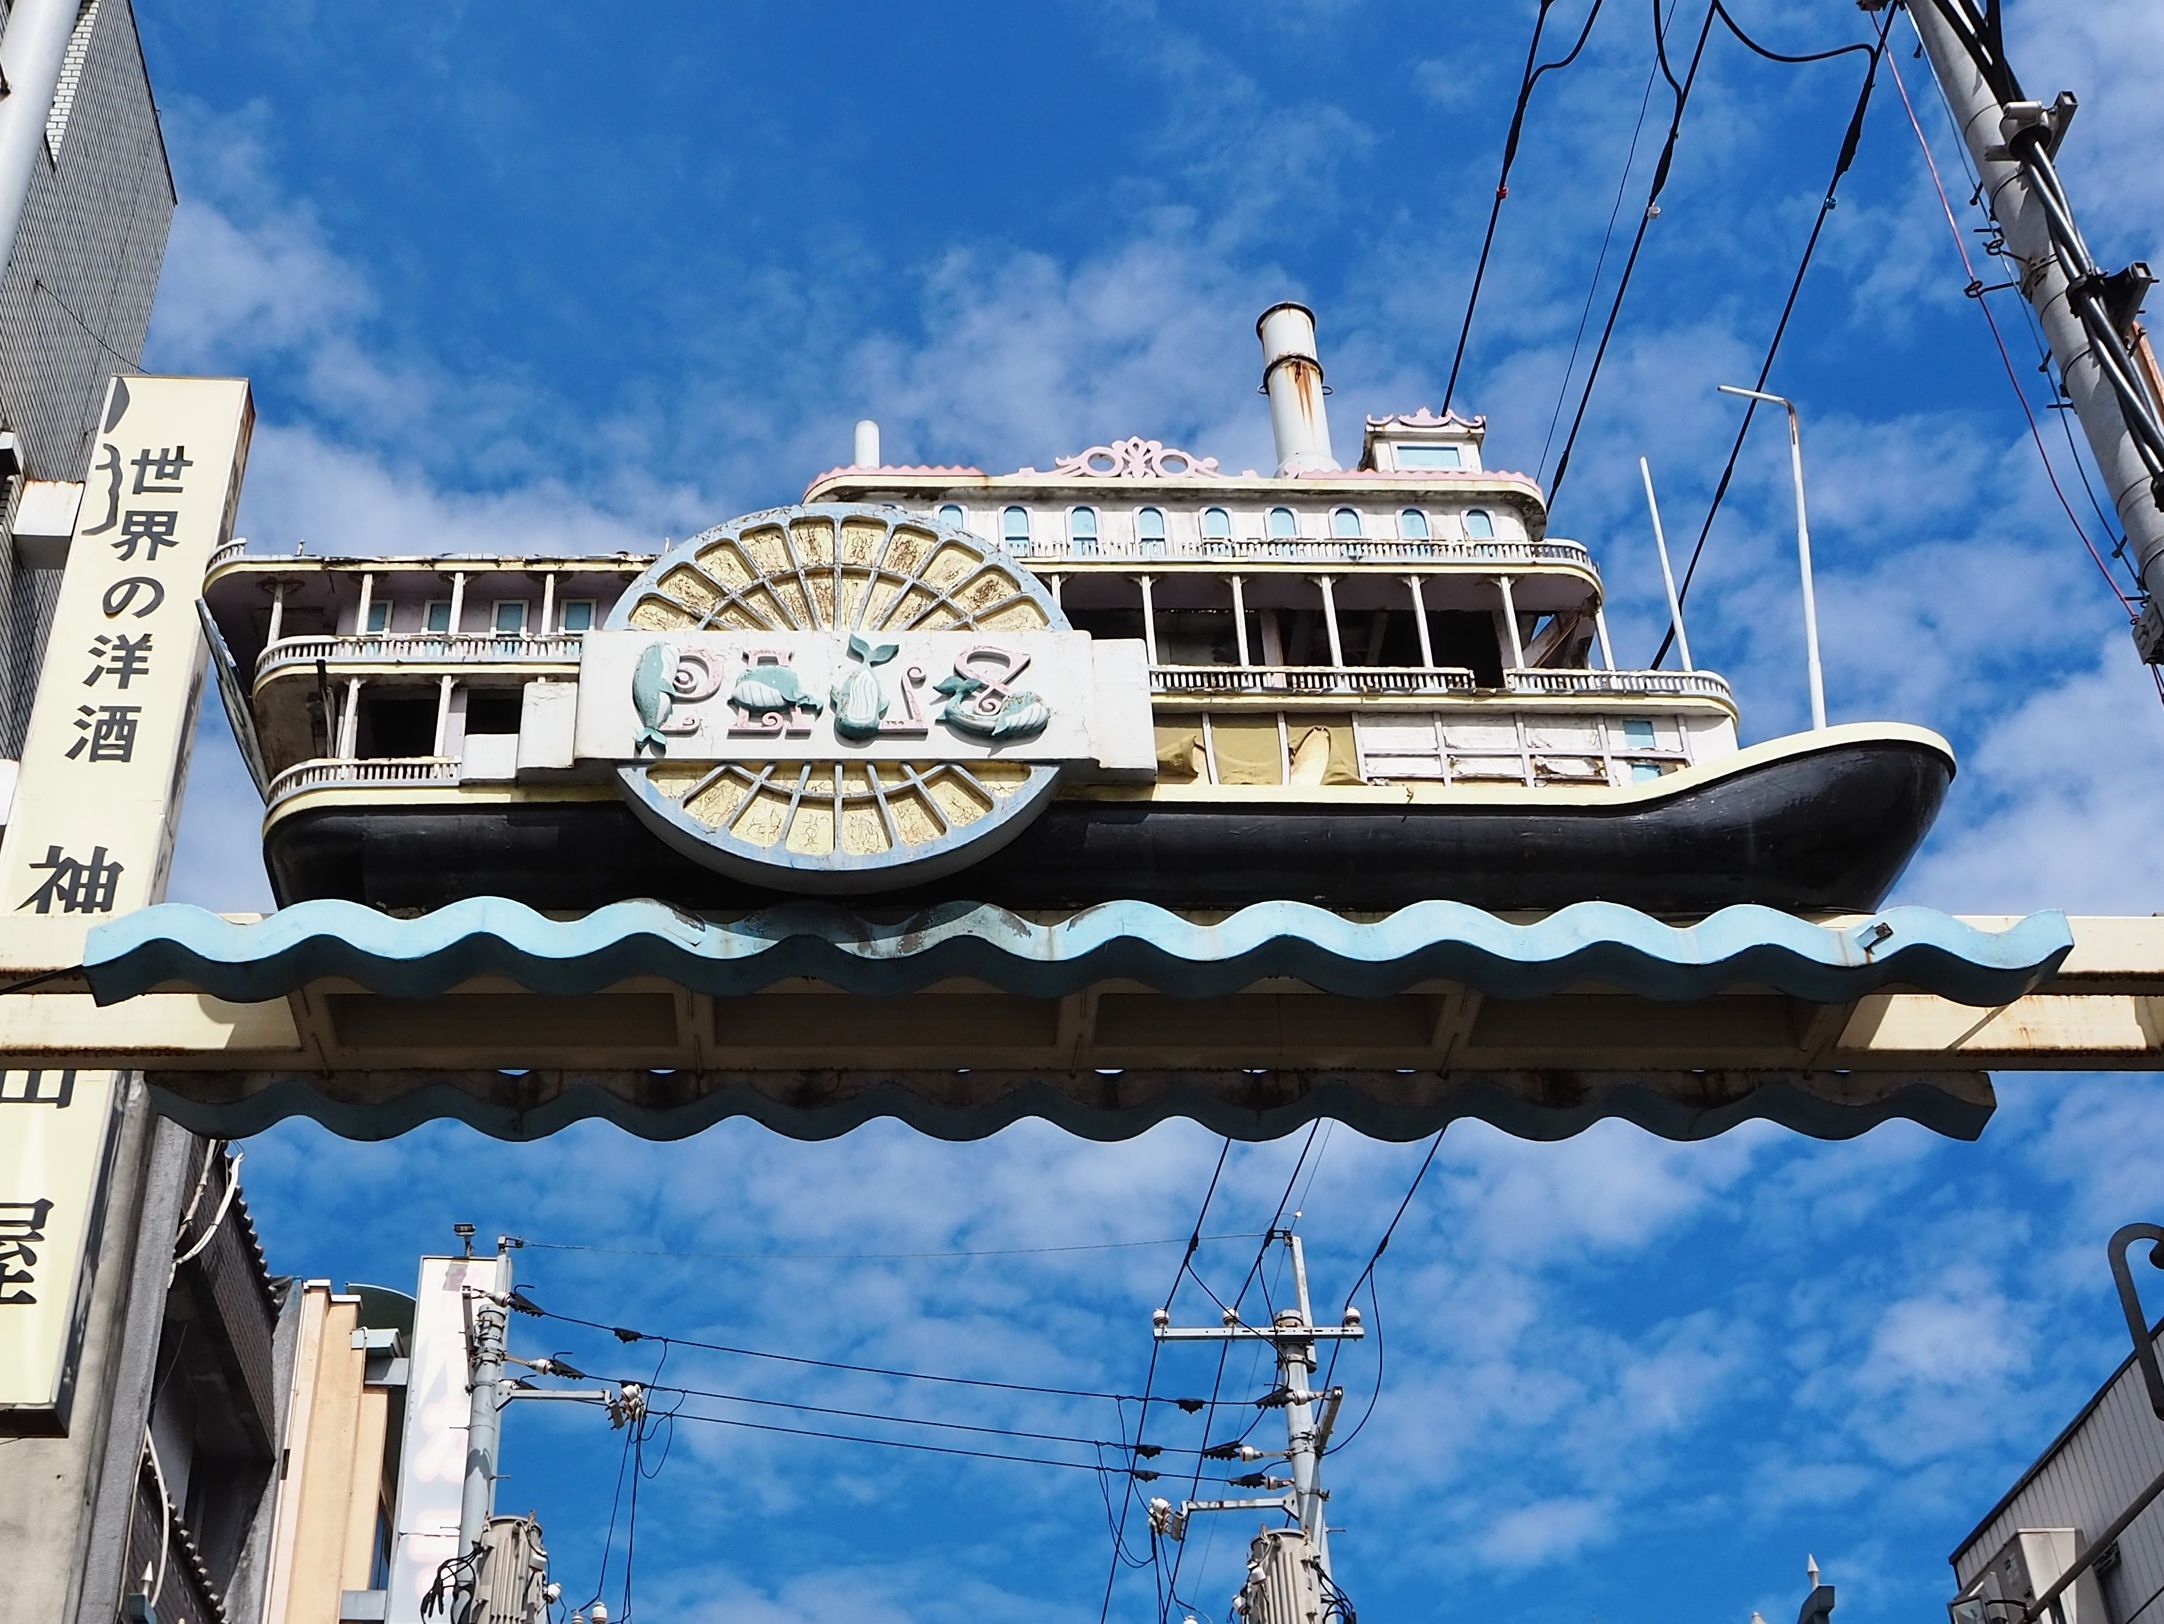 パルス通りは通りをまたいで飾られた船のオブジェが特徴的